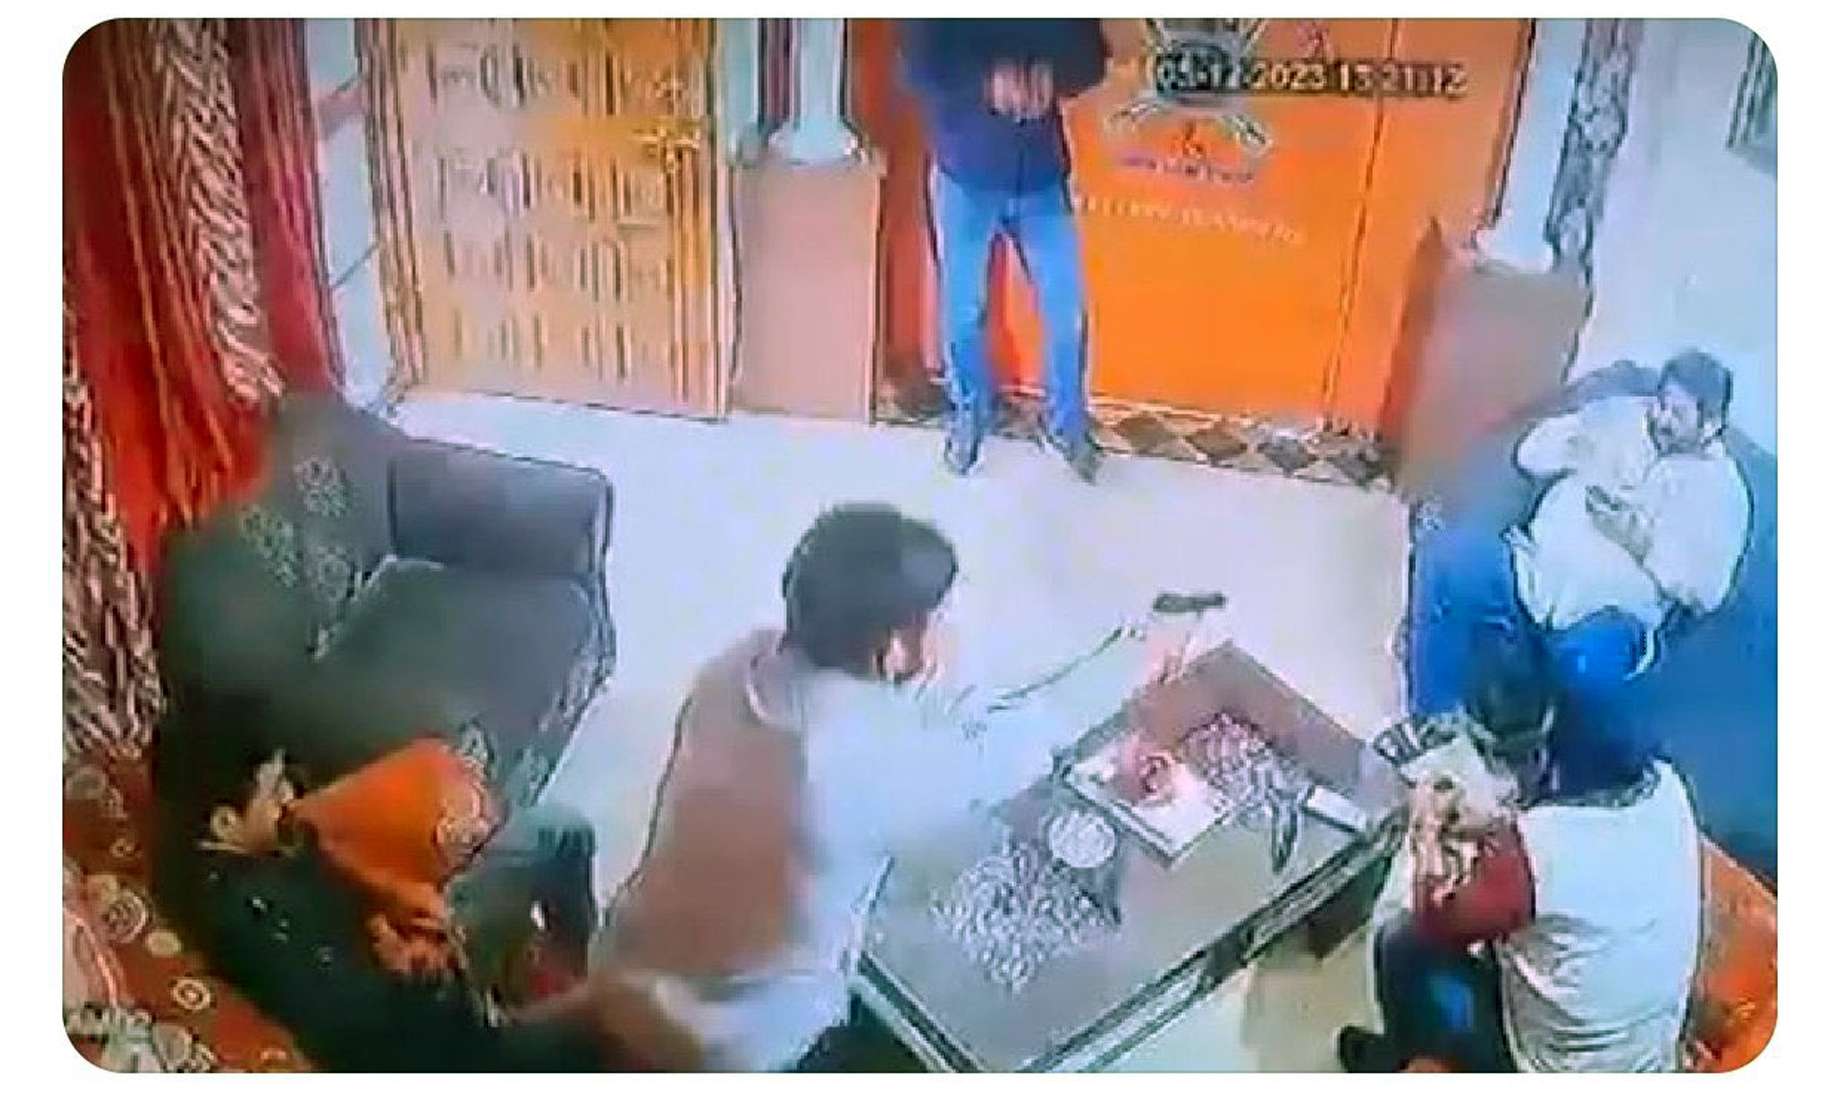 करणी सेनेच्या राष्ट्रीय अध्यक्षाची हत्या, VIDEO:गोगामेडी यांच्यावर घरात घुसून गोळीबार; एक तरुणही ठार; गोदारा गँगने घेतली जबाबदारी